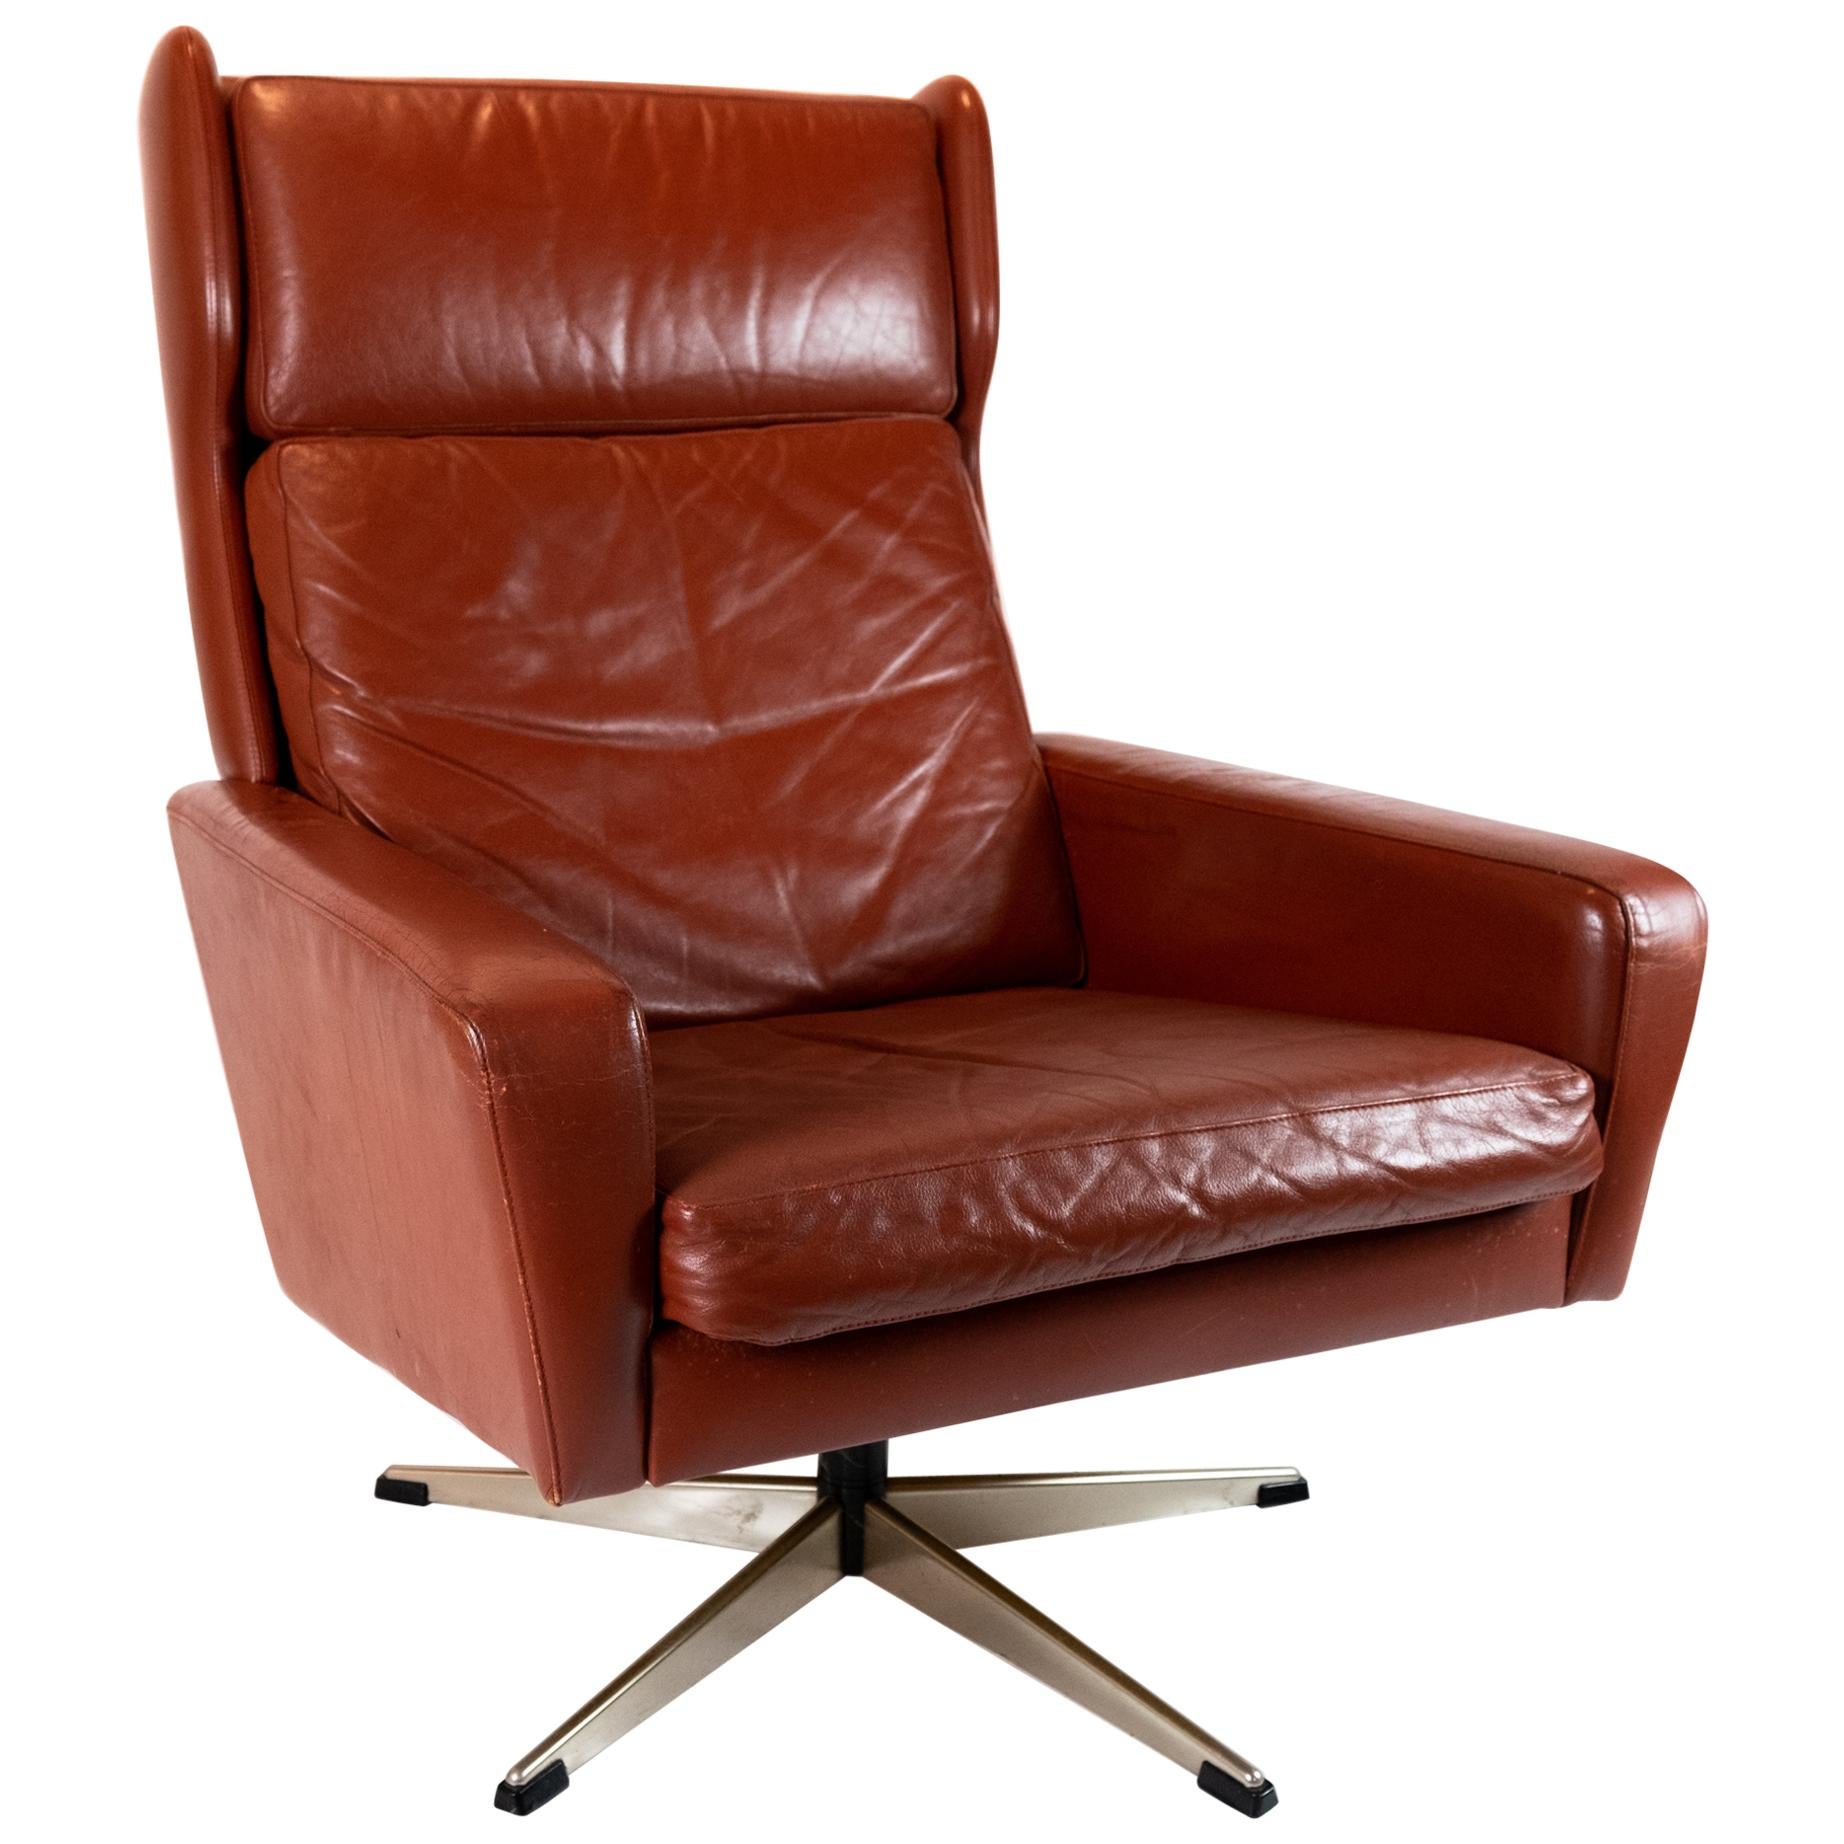 Der Sessel ist mit rot-braunem, elegantem Leder von dänischem Design gepolstert, 1960er Jahre